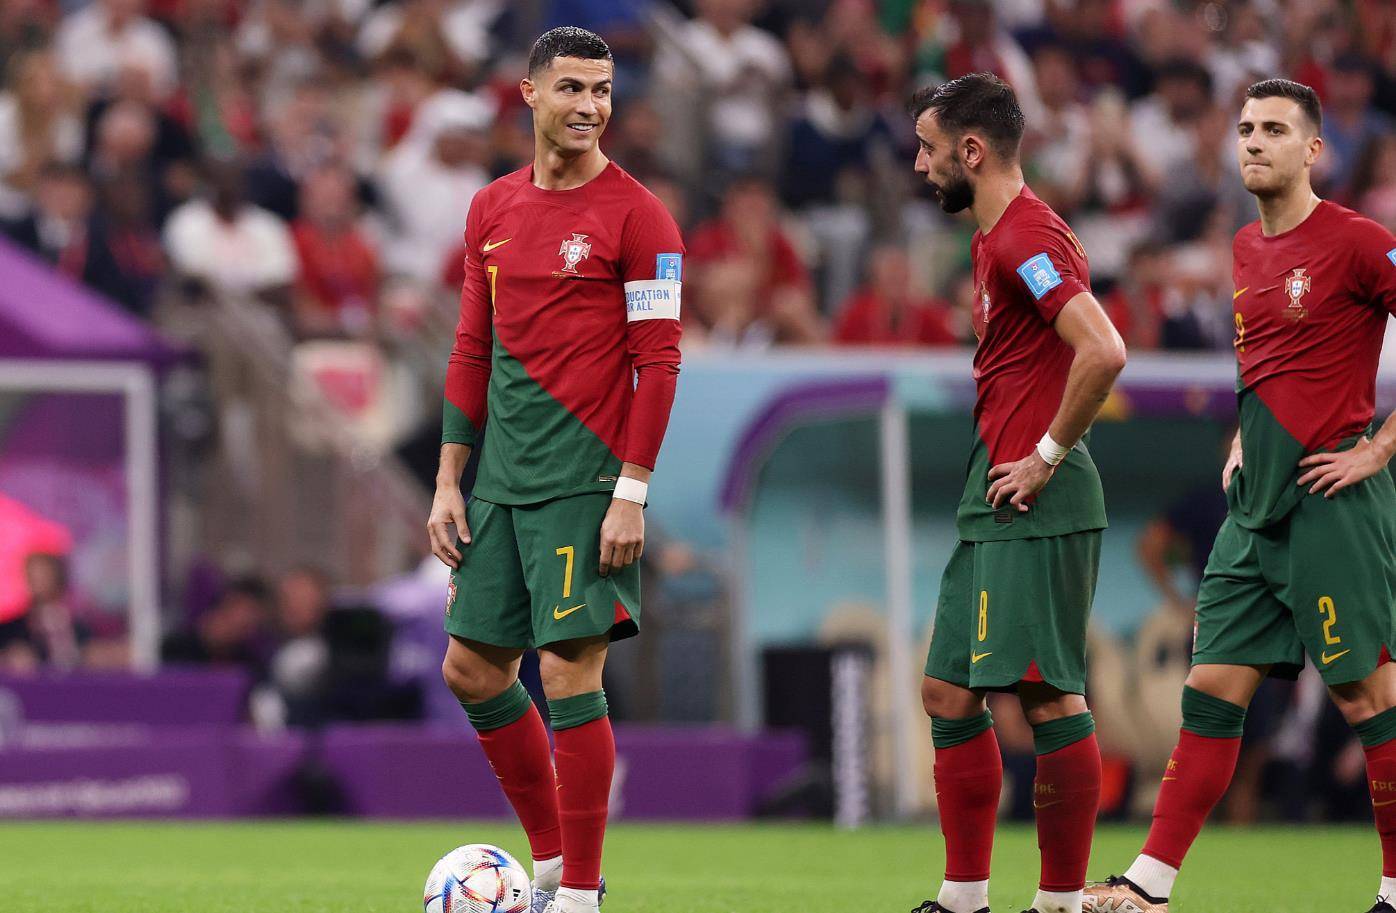 英媒：C罗对不起，葡萄牙不再需要你了！摩洛哥祷告：C罗首发打满